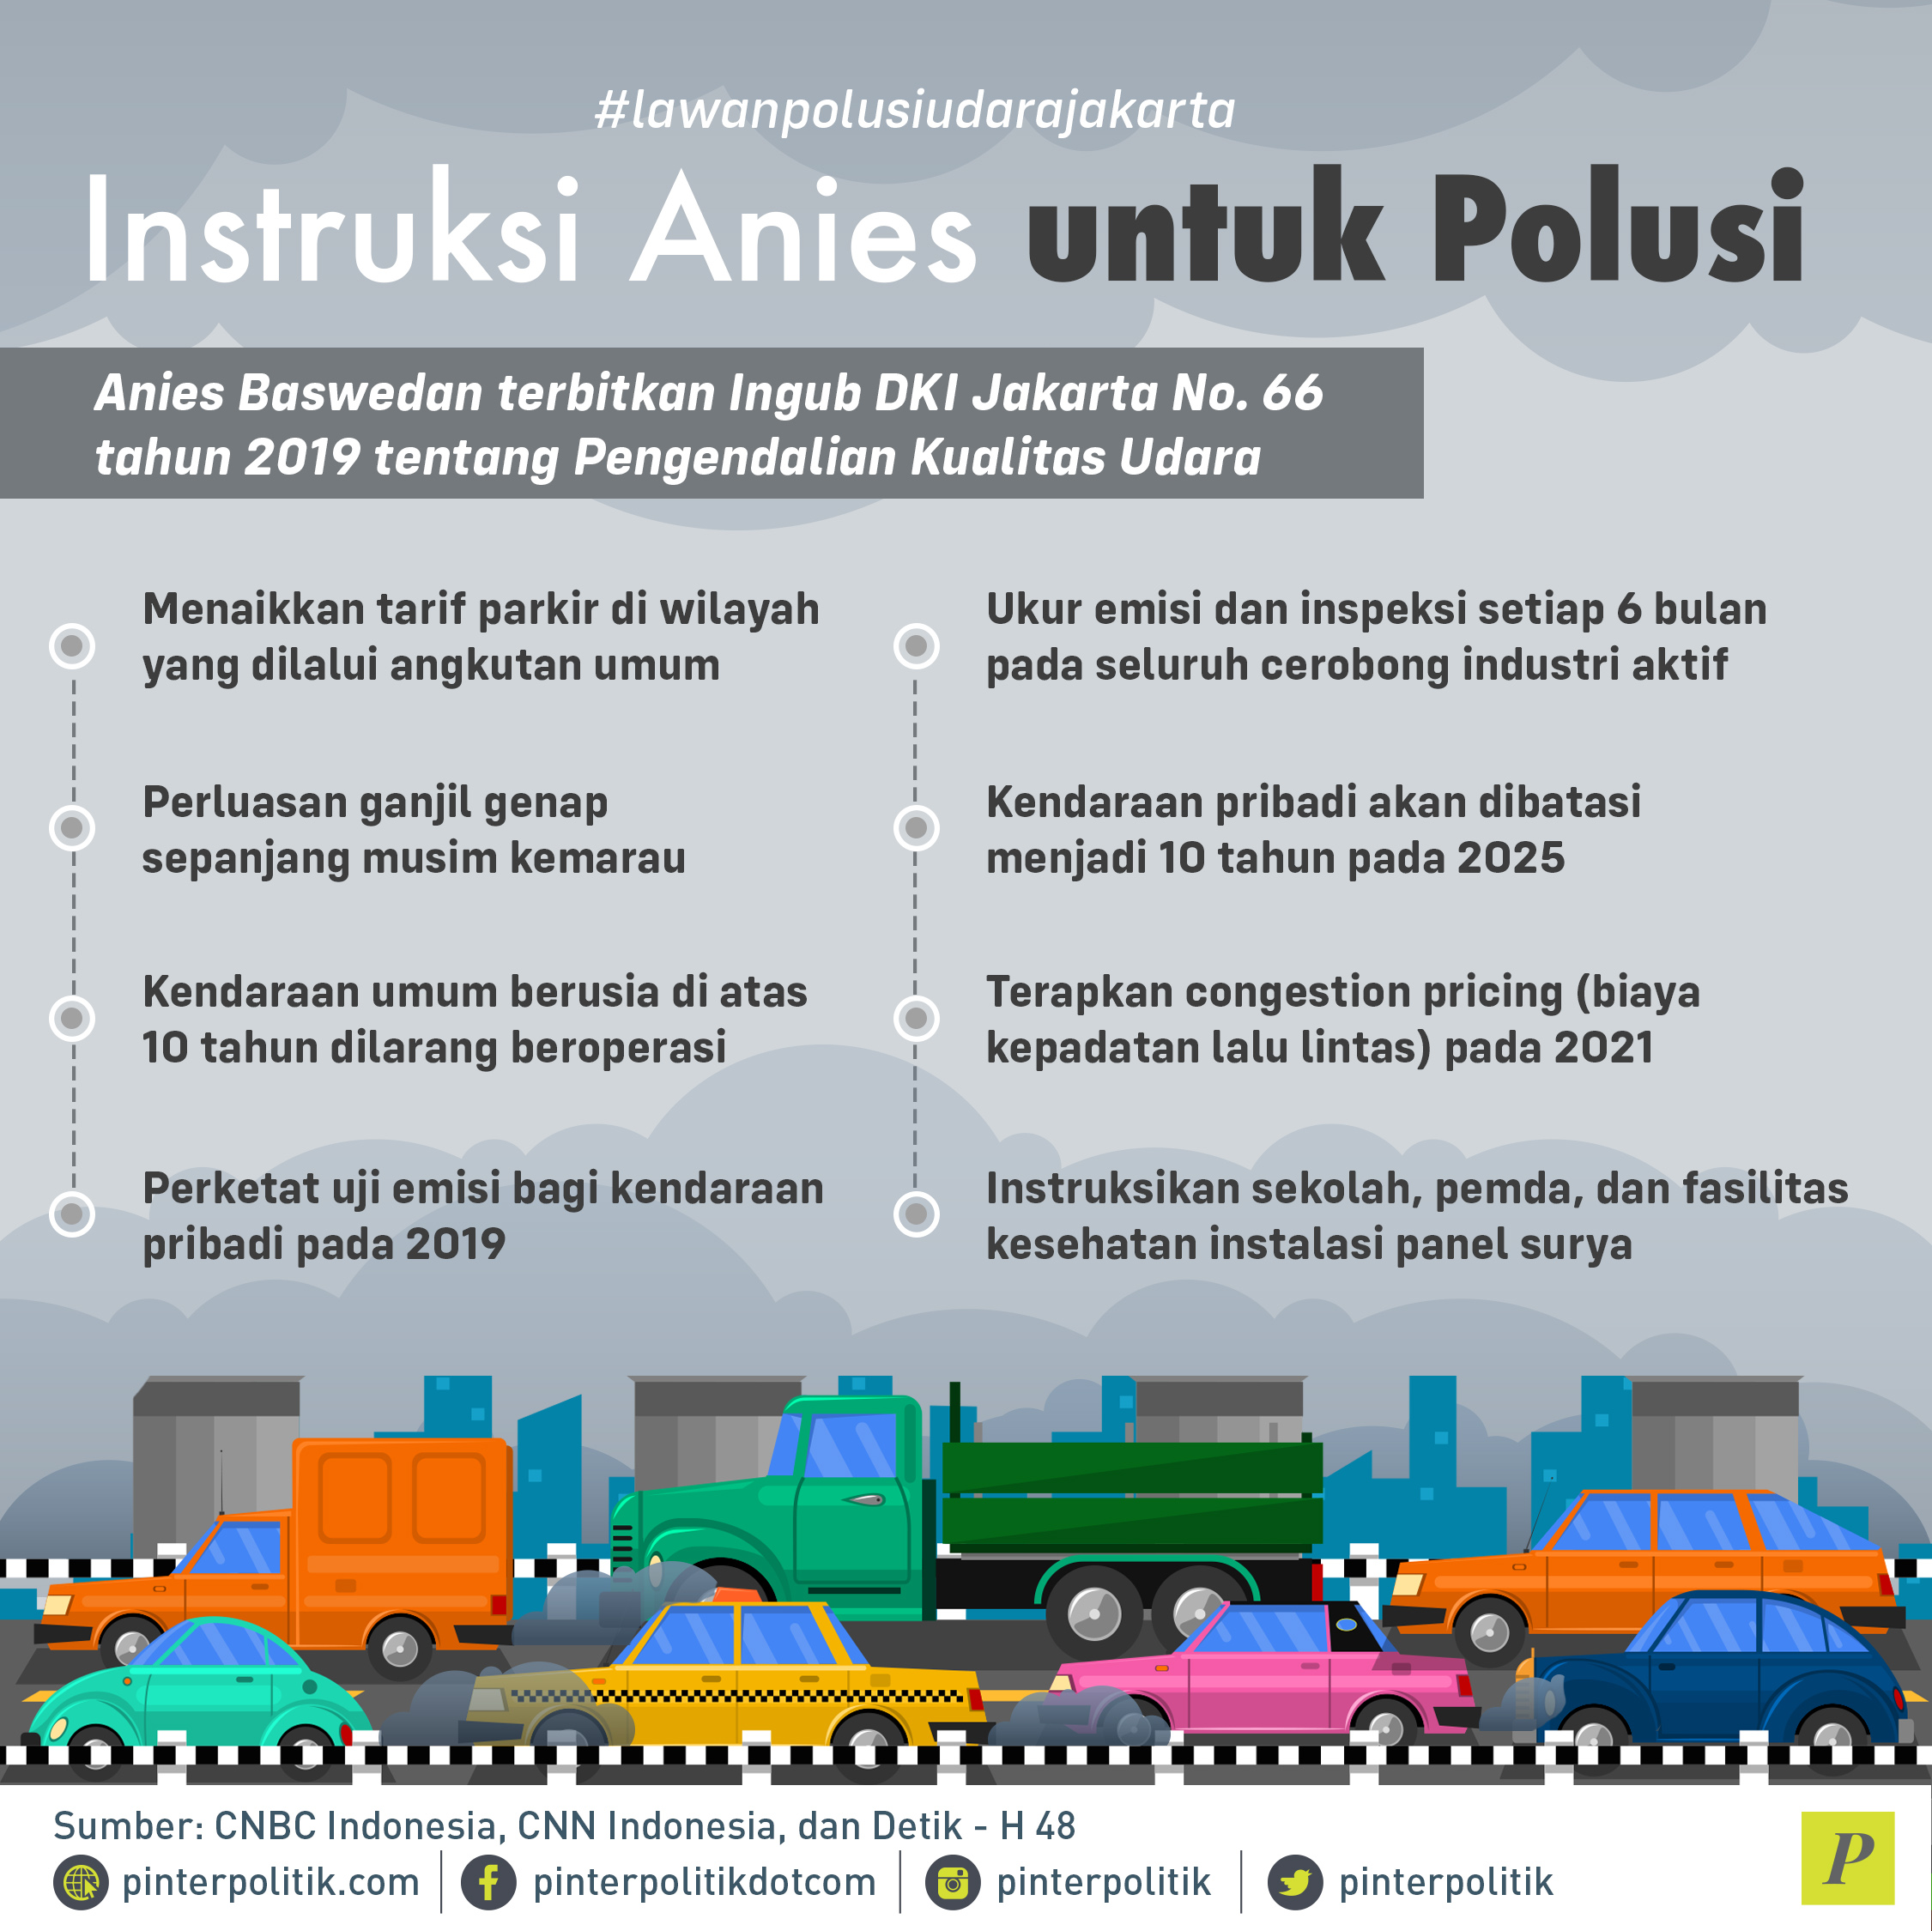 Instruksi Anies untuk Polusi